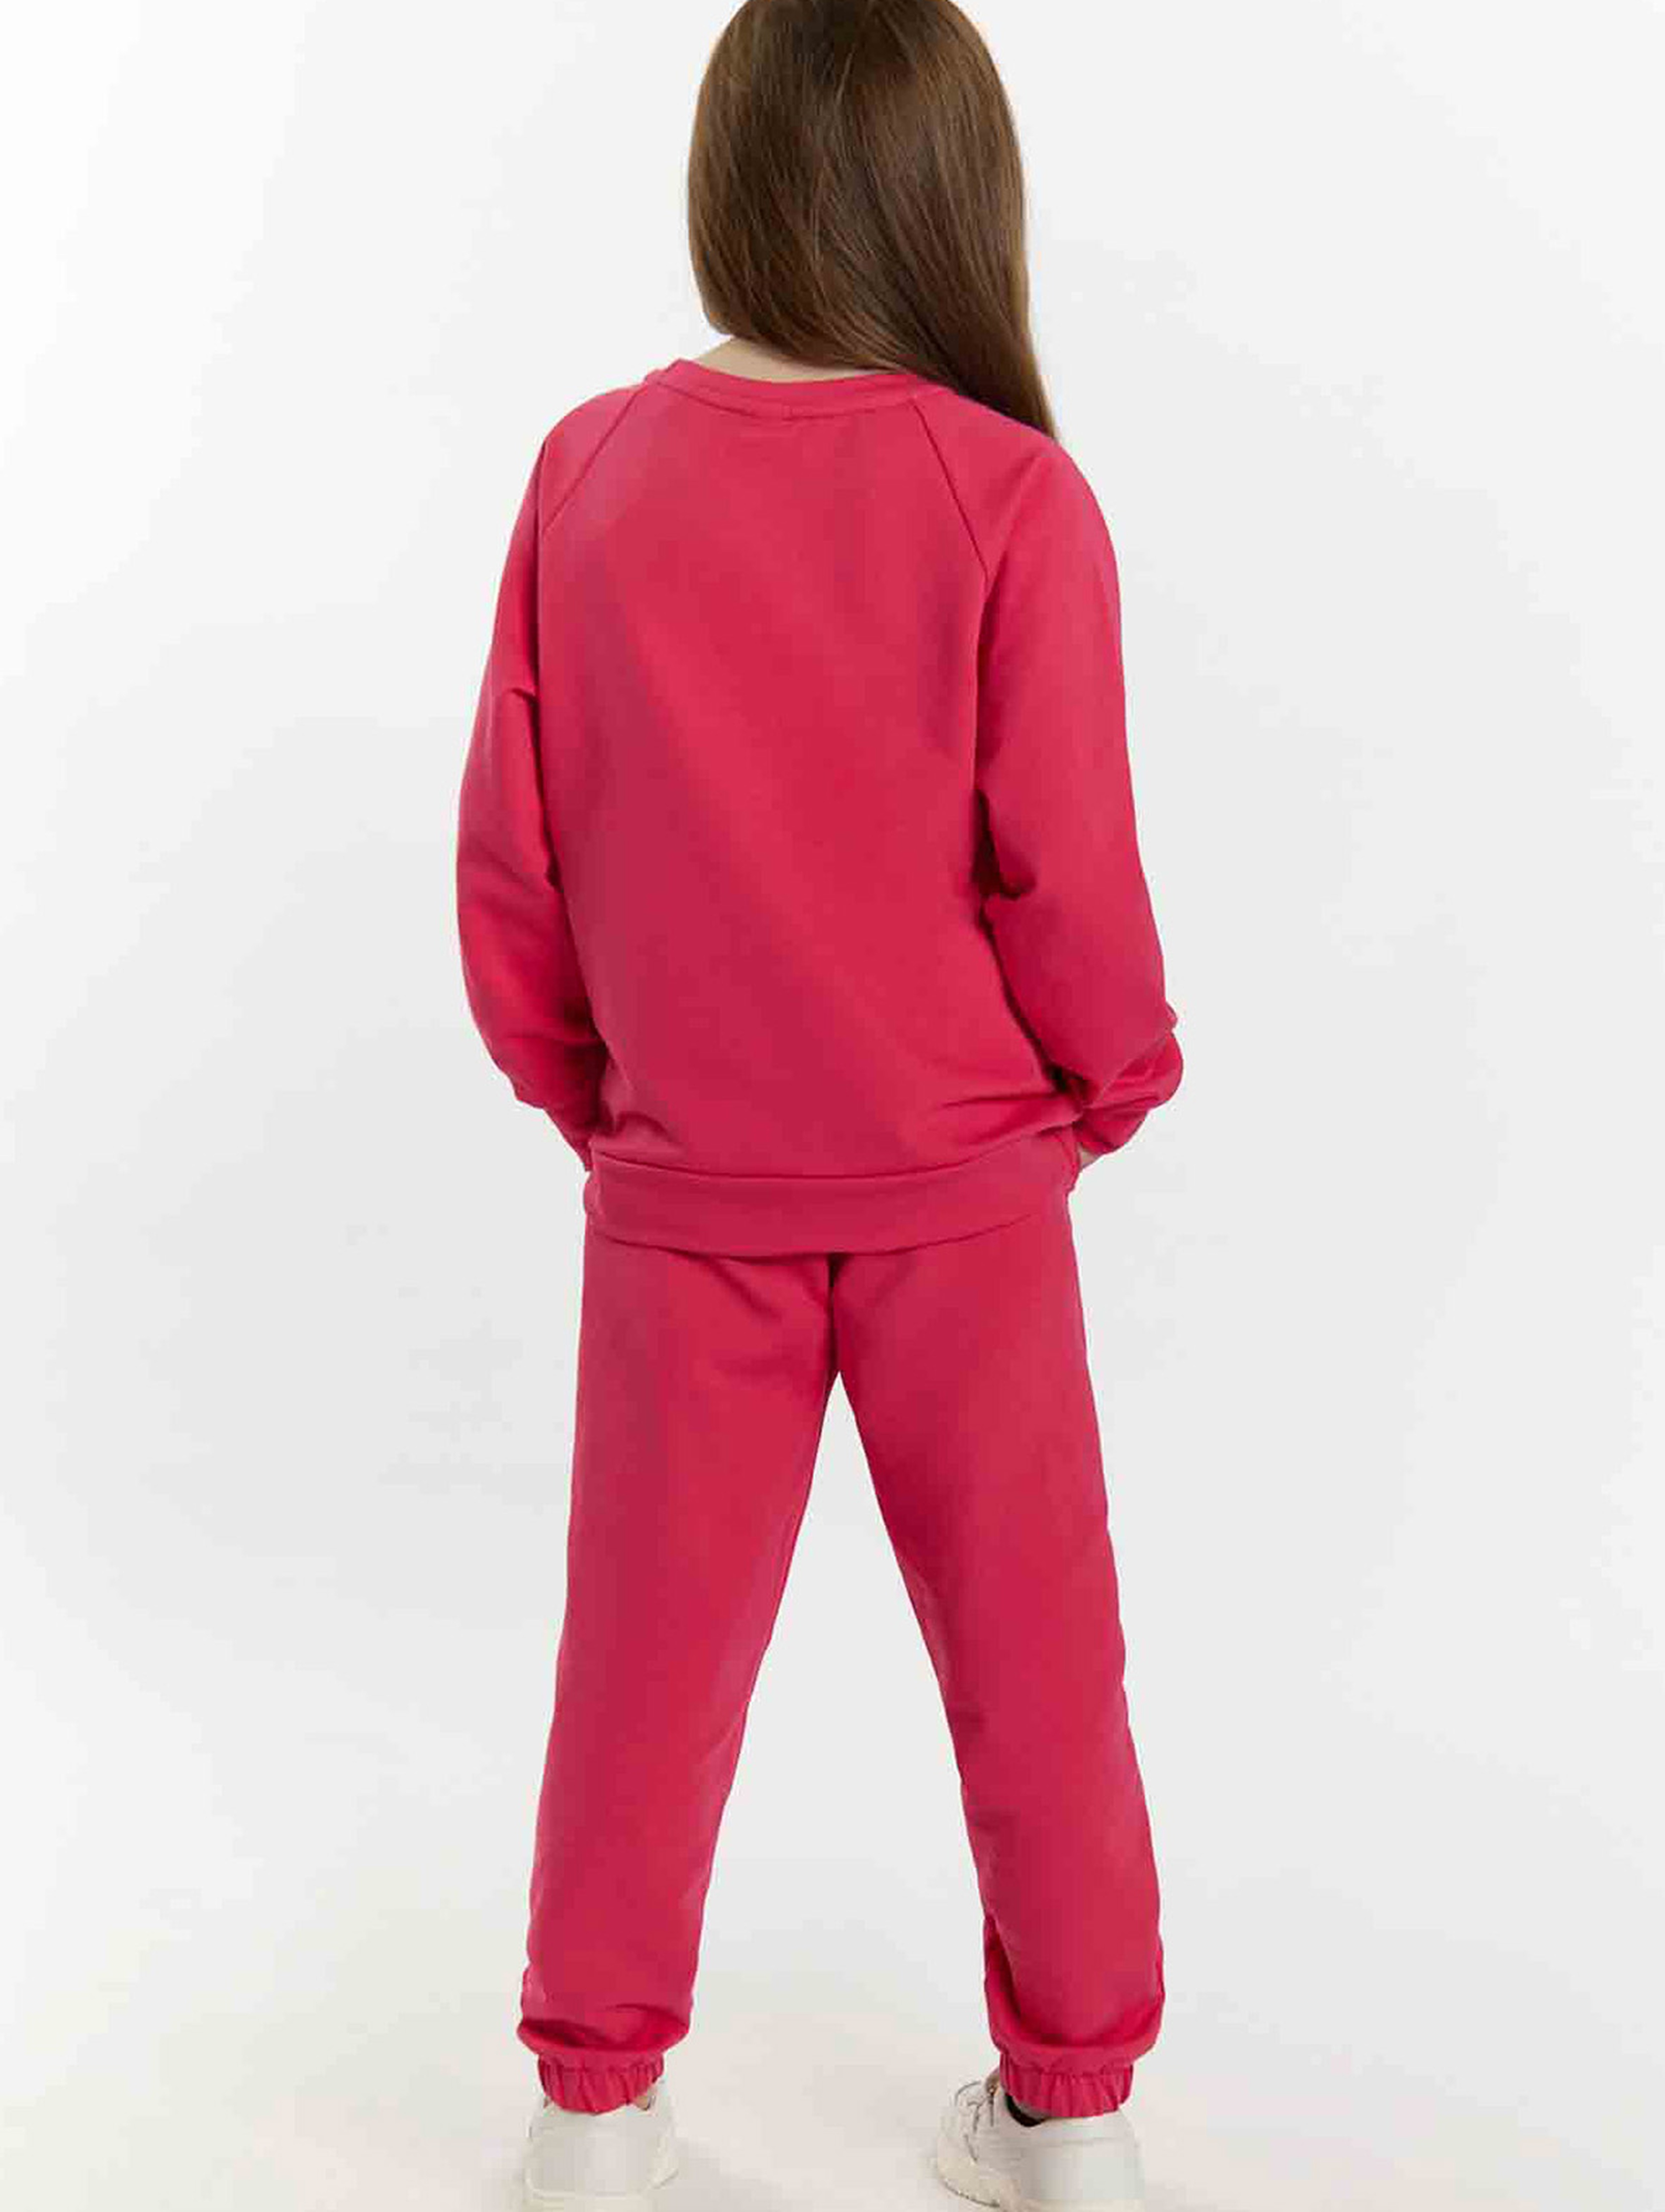 Komplet dresowy dziewczęcy - bluza i spodnie dresowe - różowy